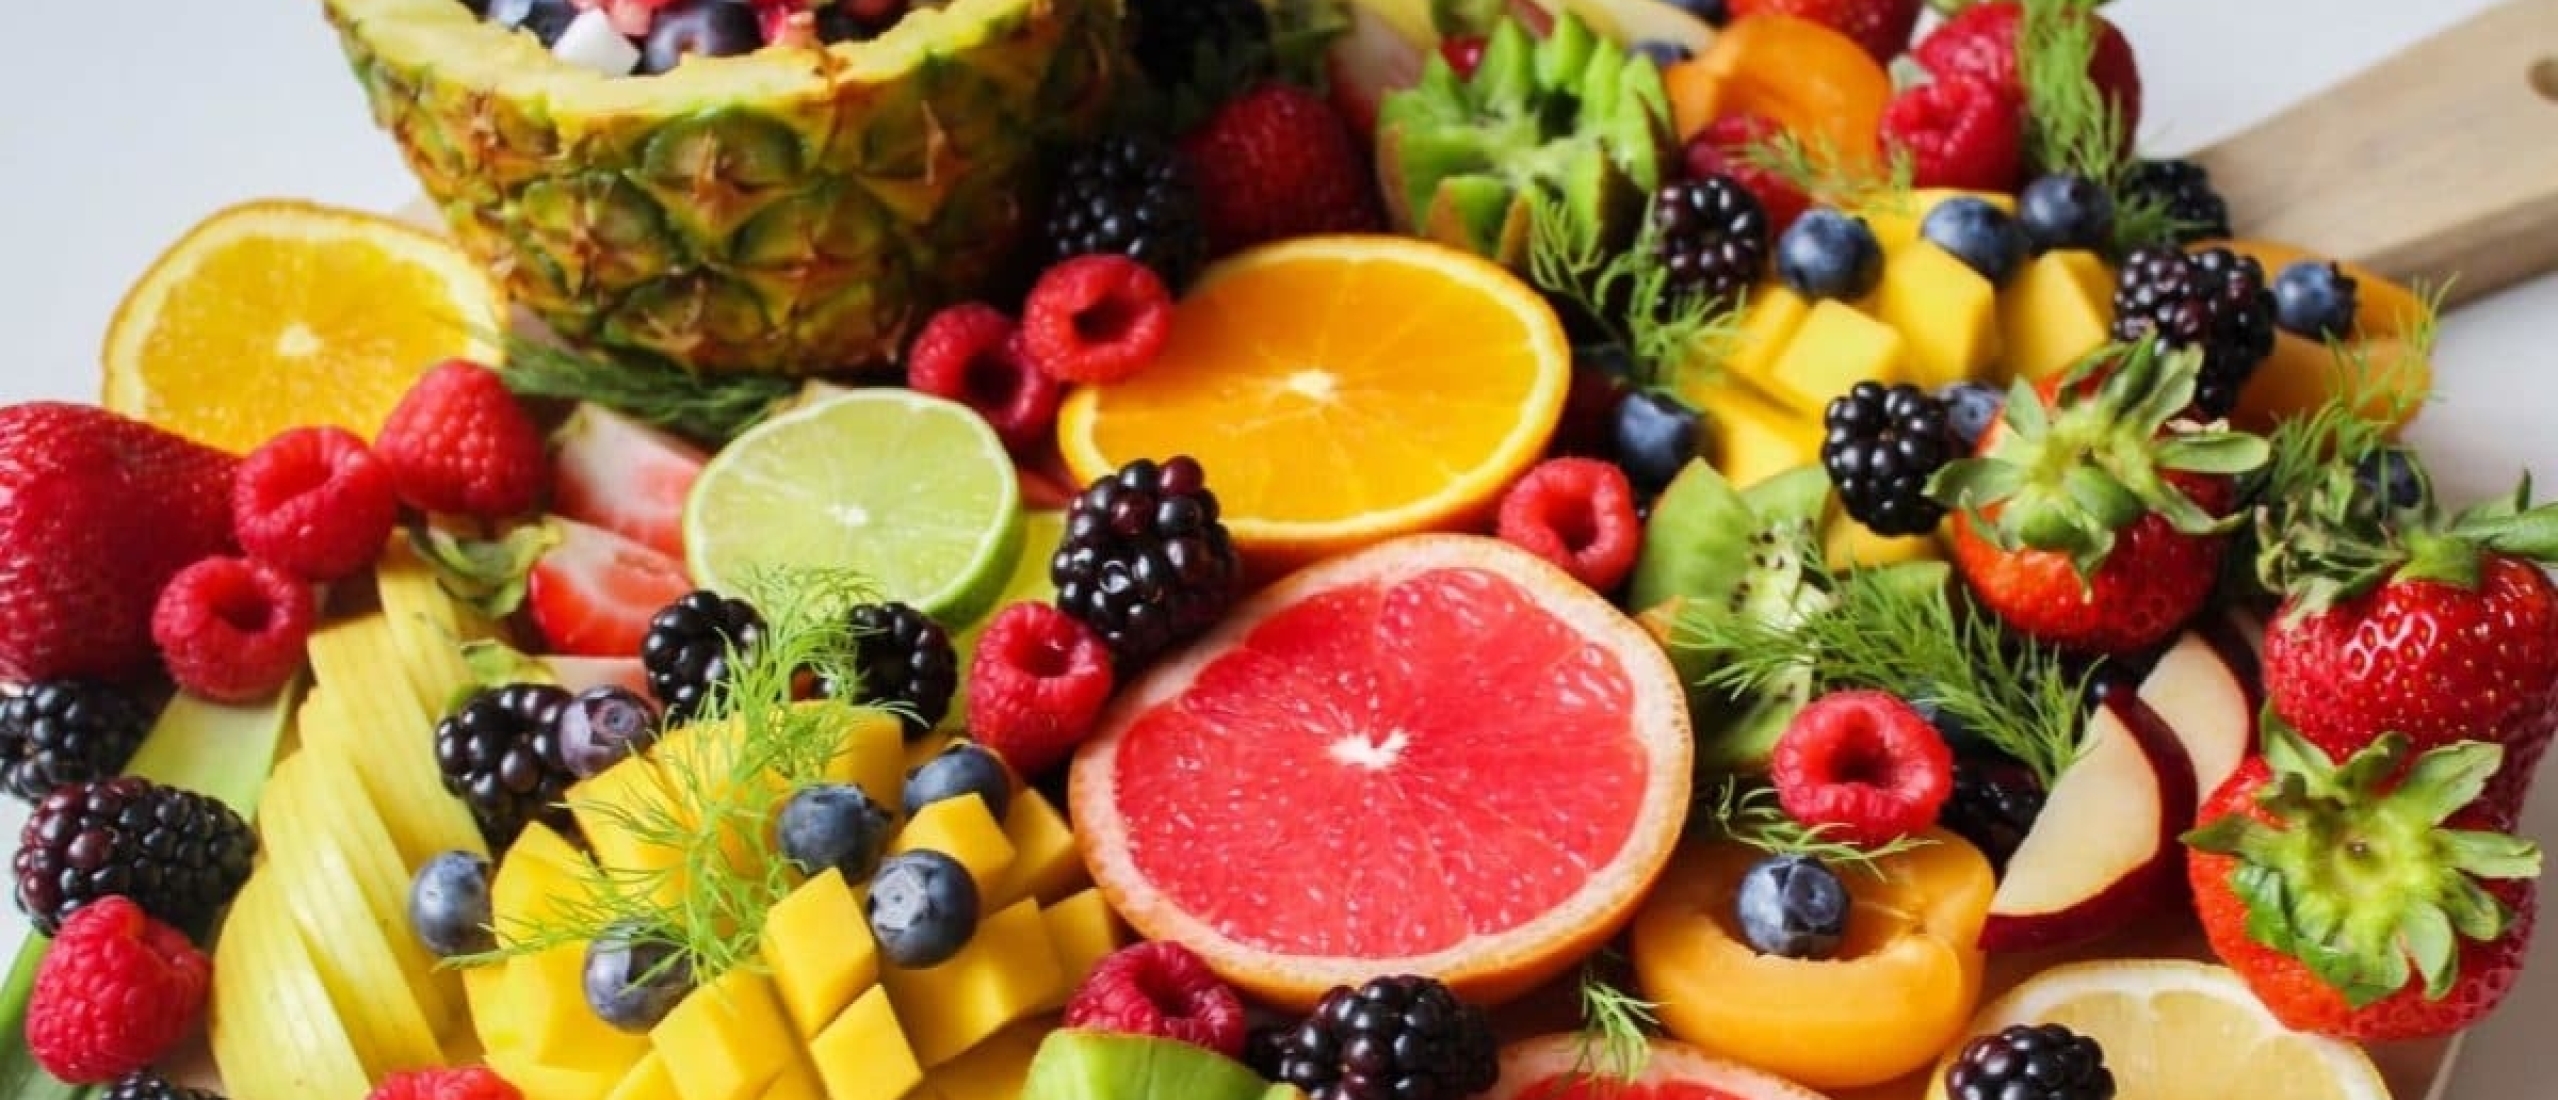 Vers fruit, diepvries fruit of fruit uit blik? Ontdek wat je het beste kunt eten